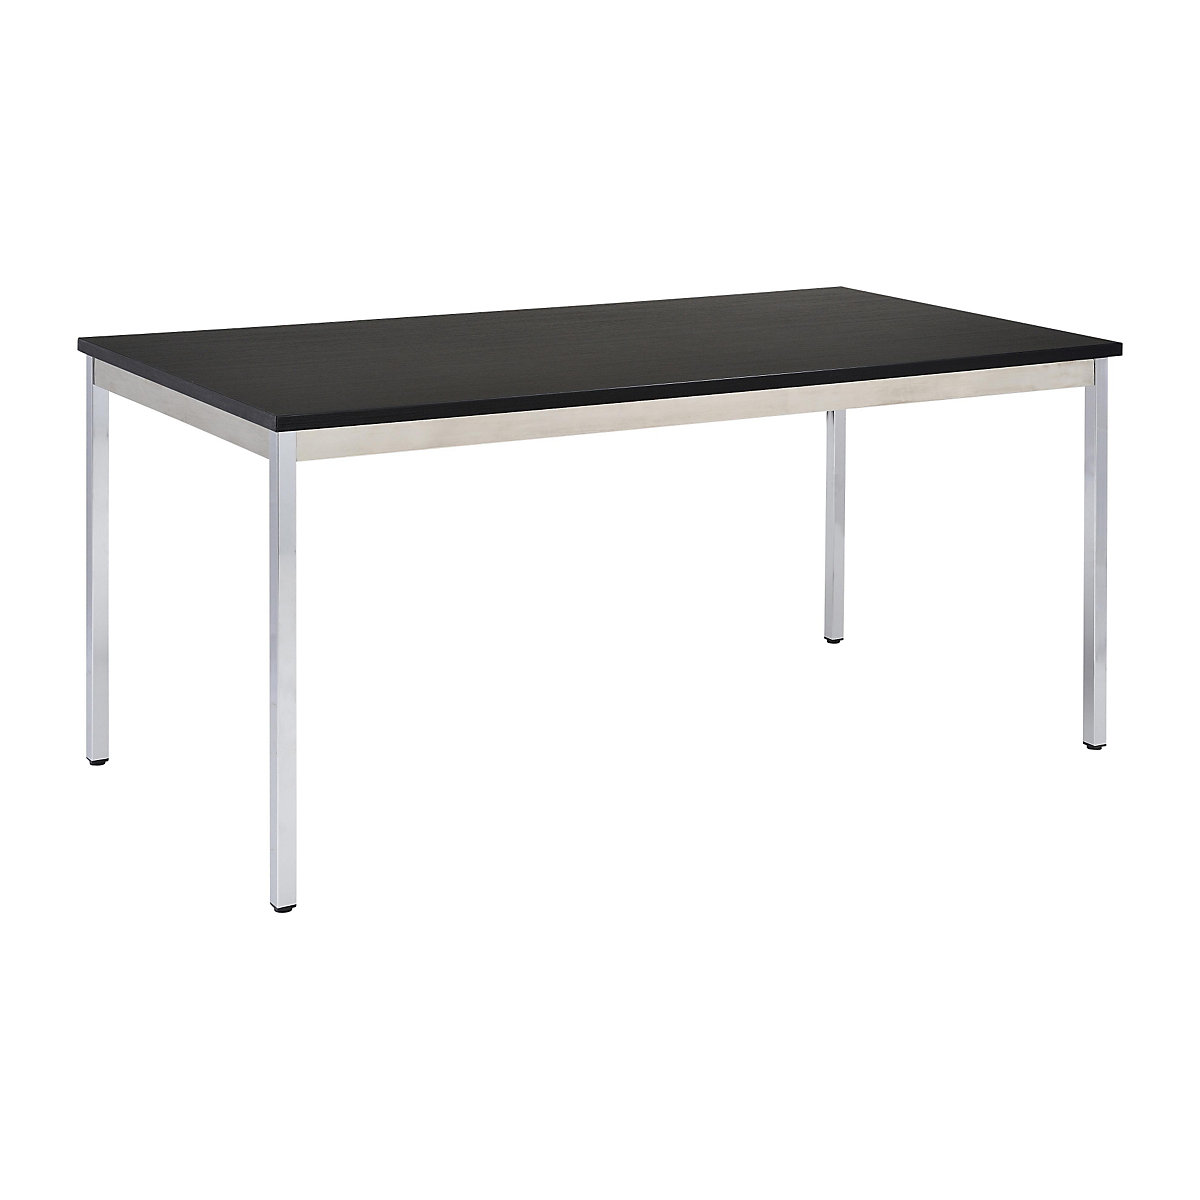 Table polyvalente – eurokraft basic, rectangulaire, l x h 1200 x 740 mm, profondeur 600 mm, plateau noir, piétement chromé-15